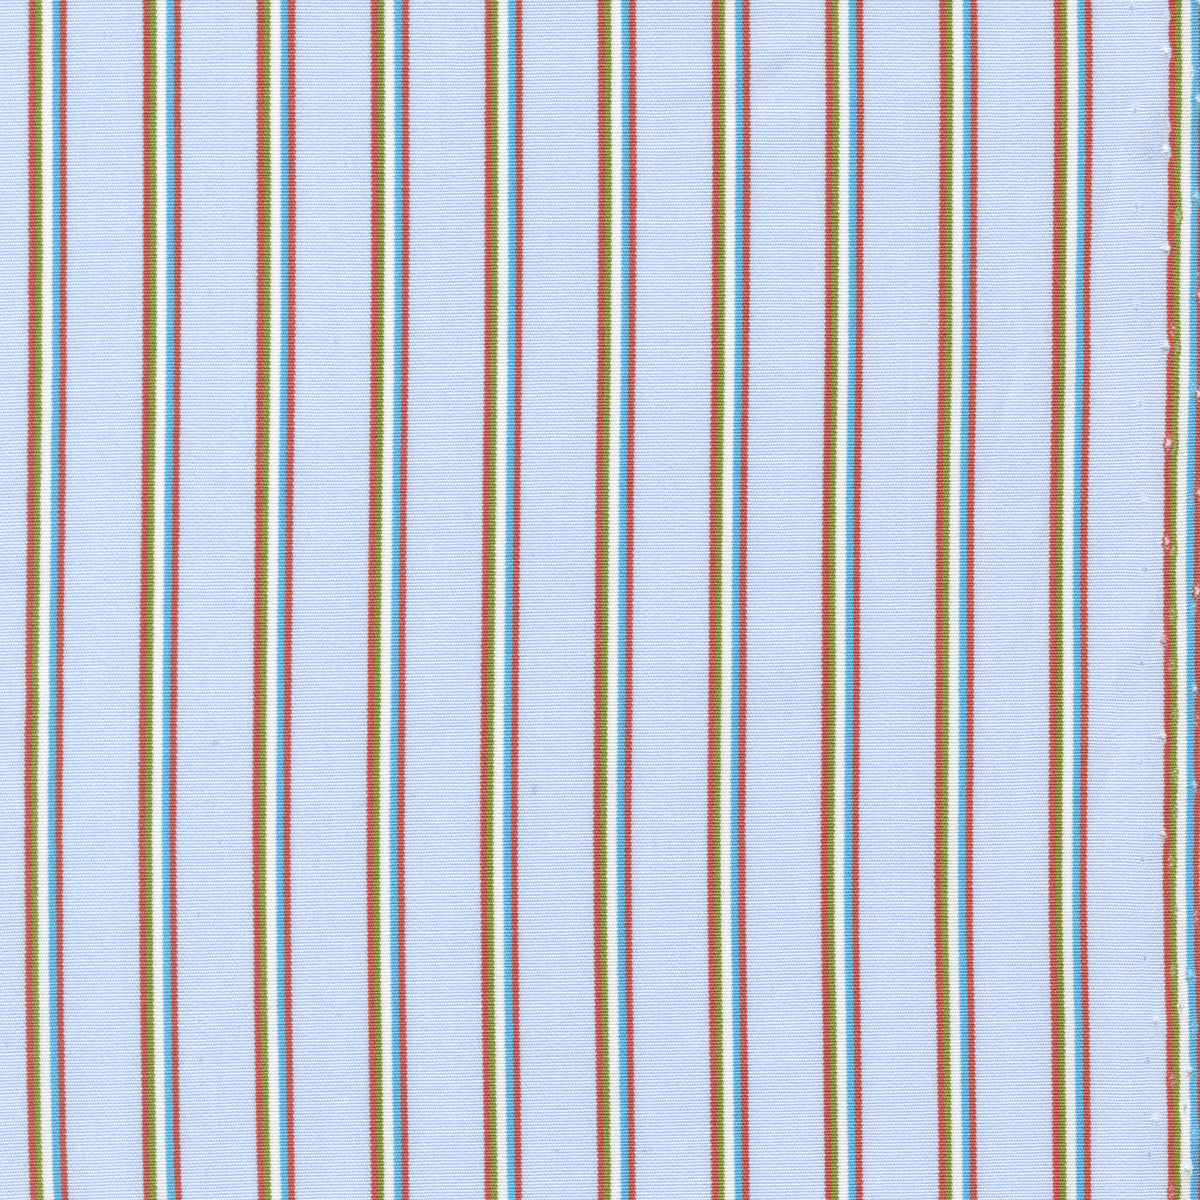 Made-to-Measure Shirt in Sky/Orange/Olive Multi Stripe Poplin